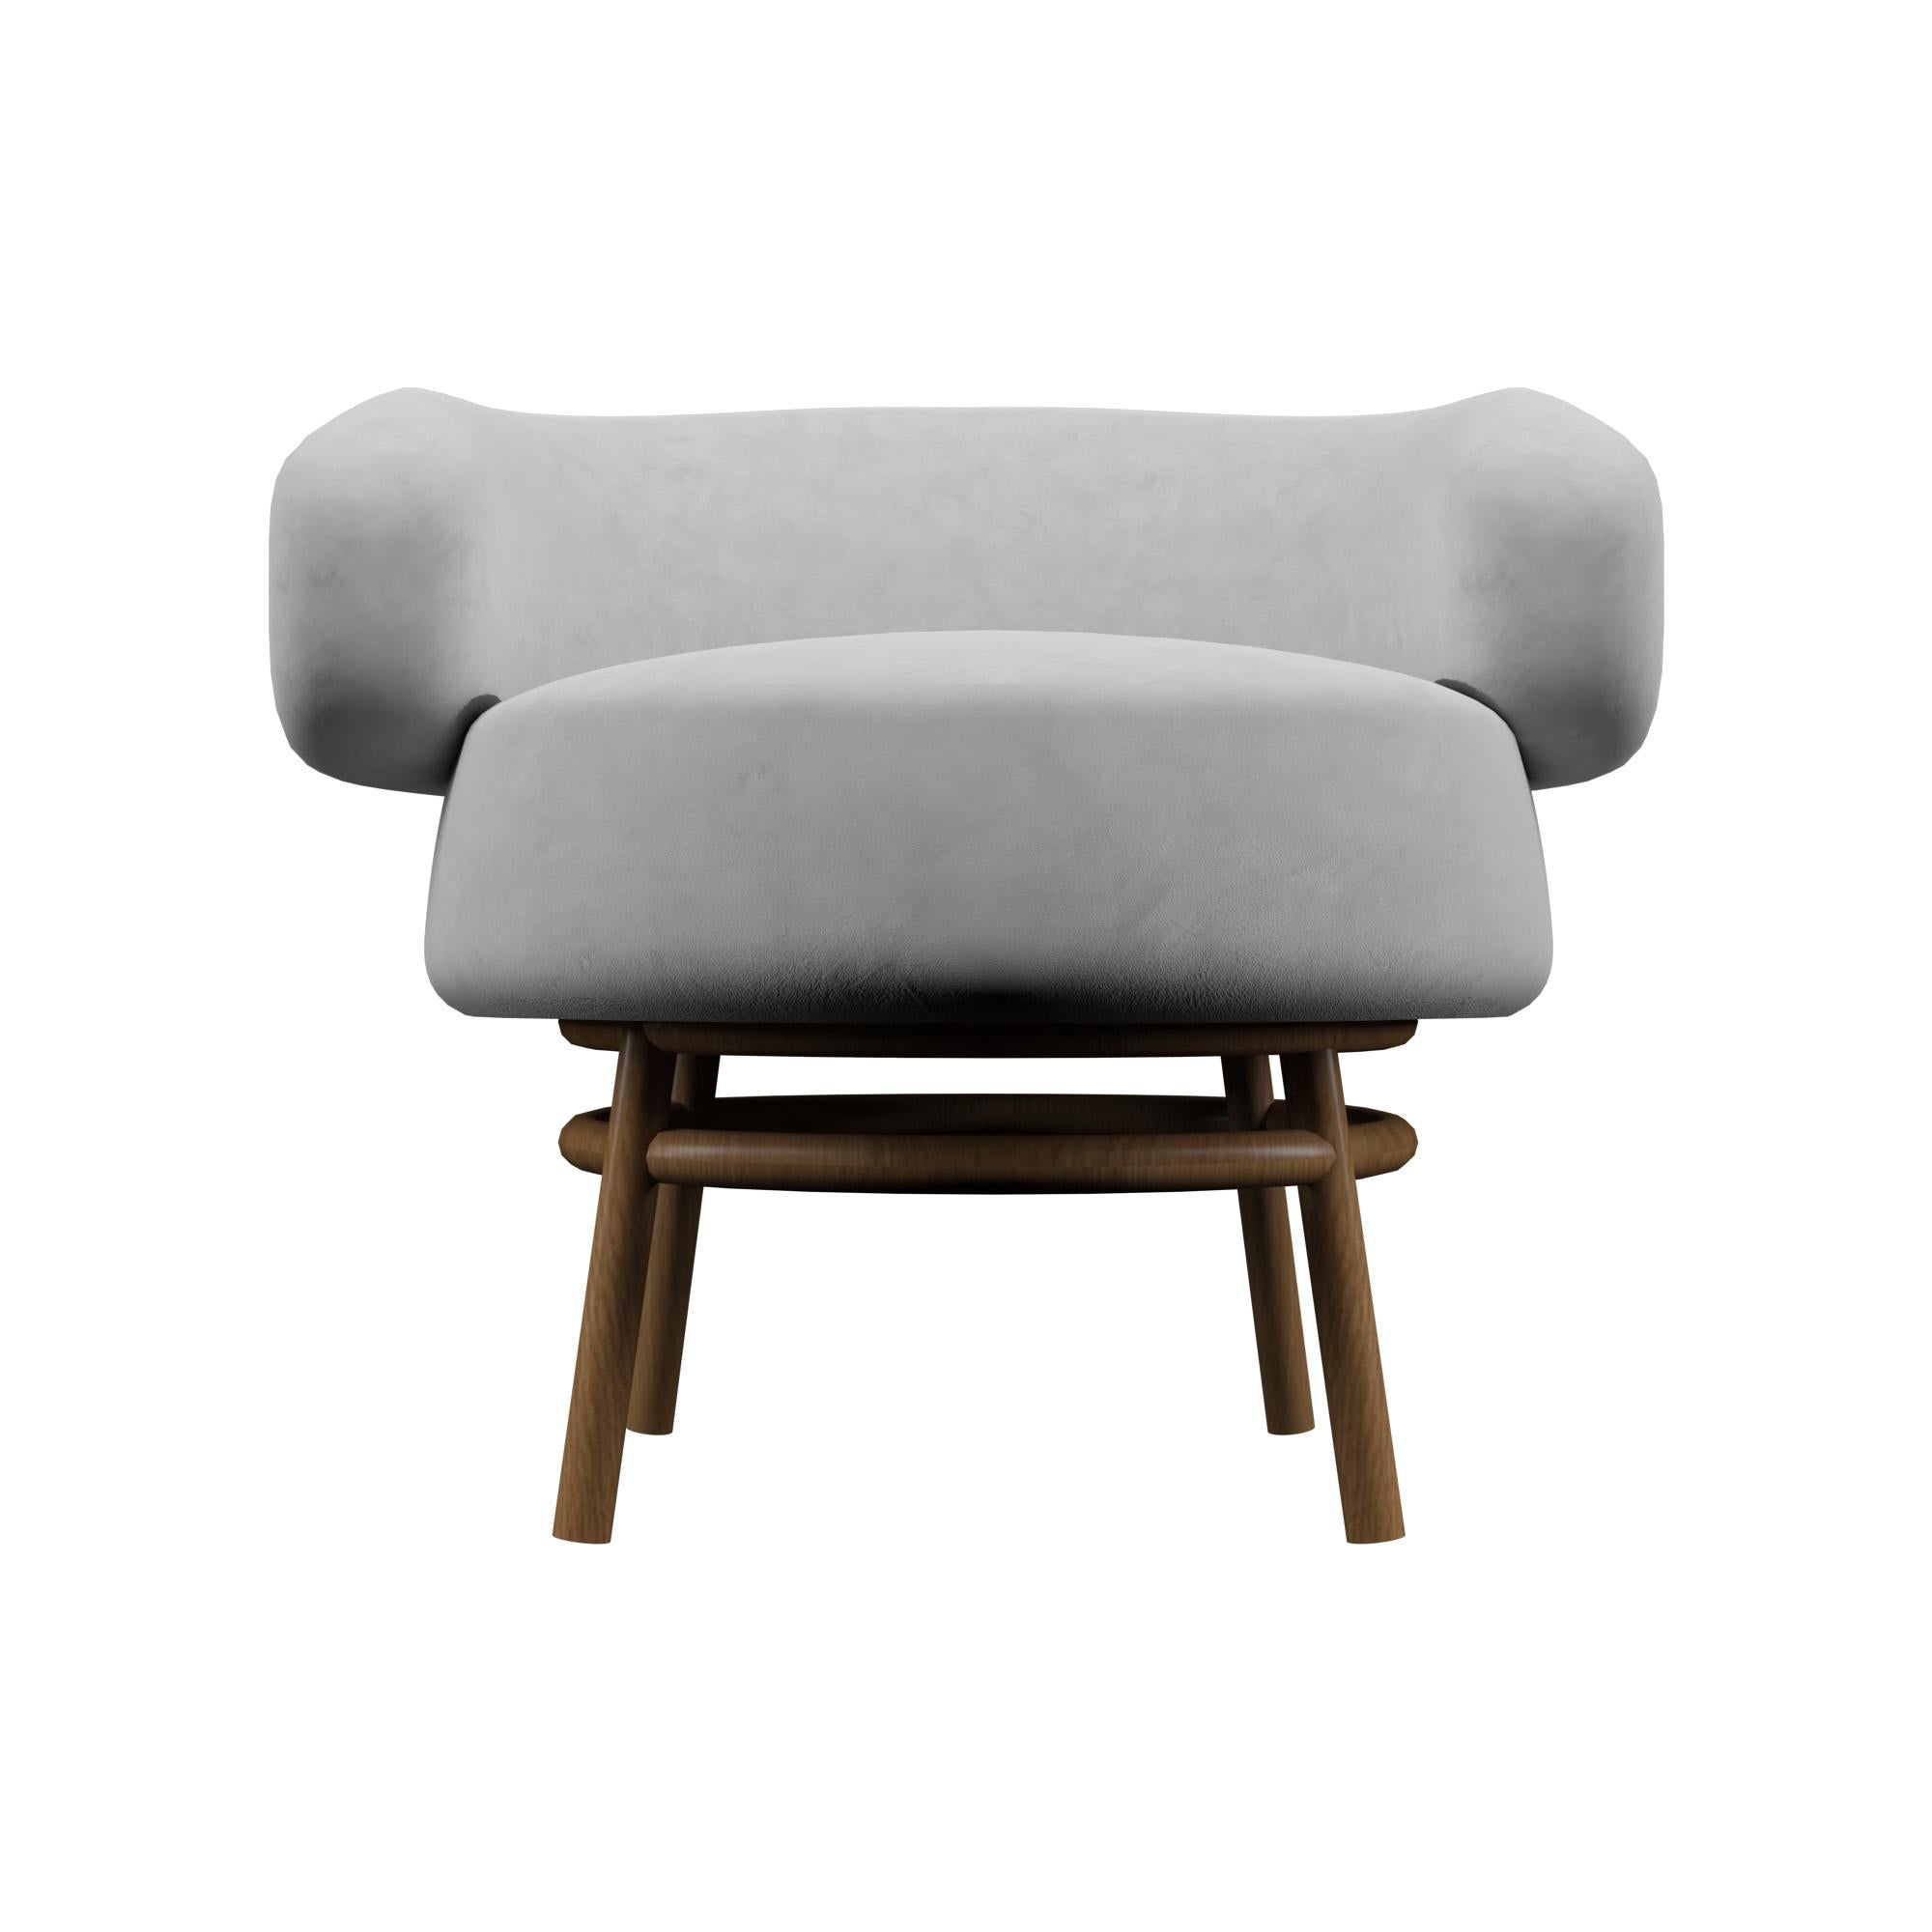 MIAMI Chair by Alexandre Ligios

L 36